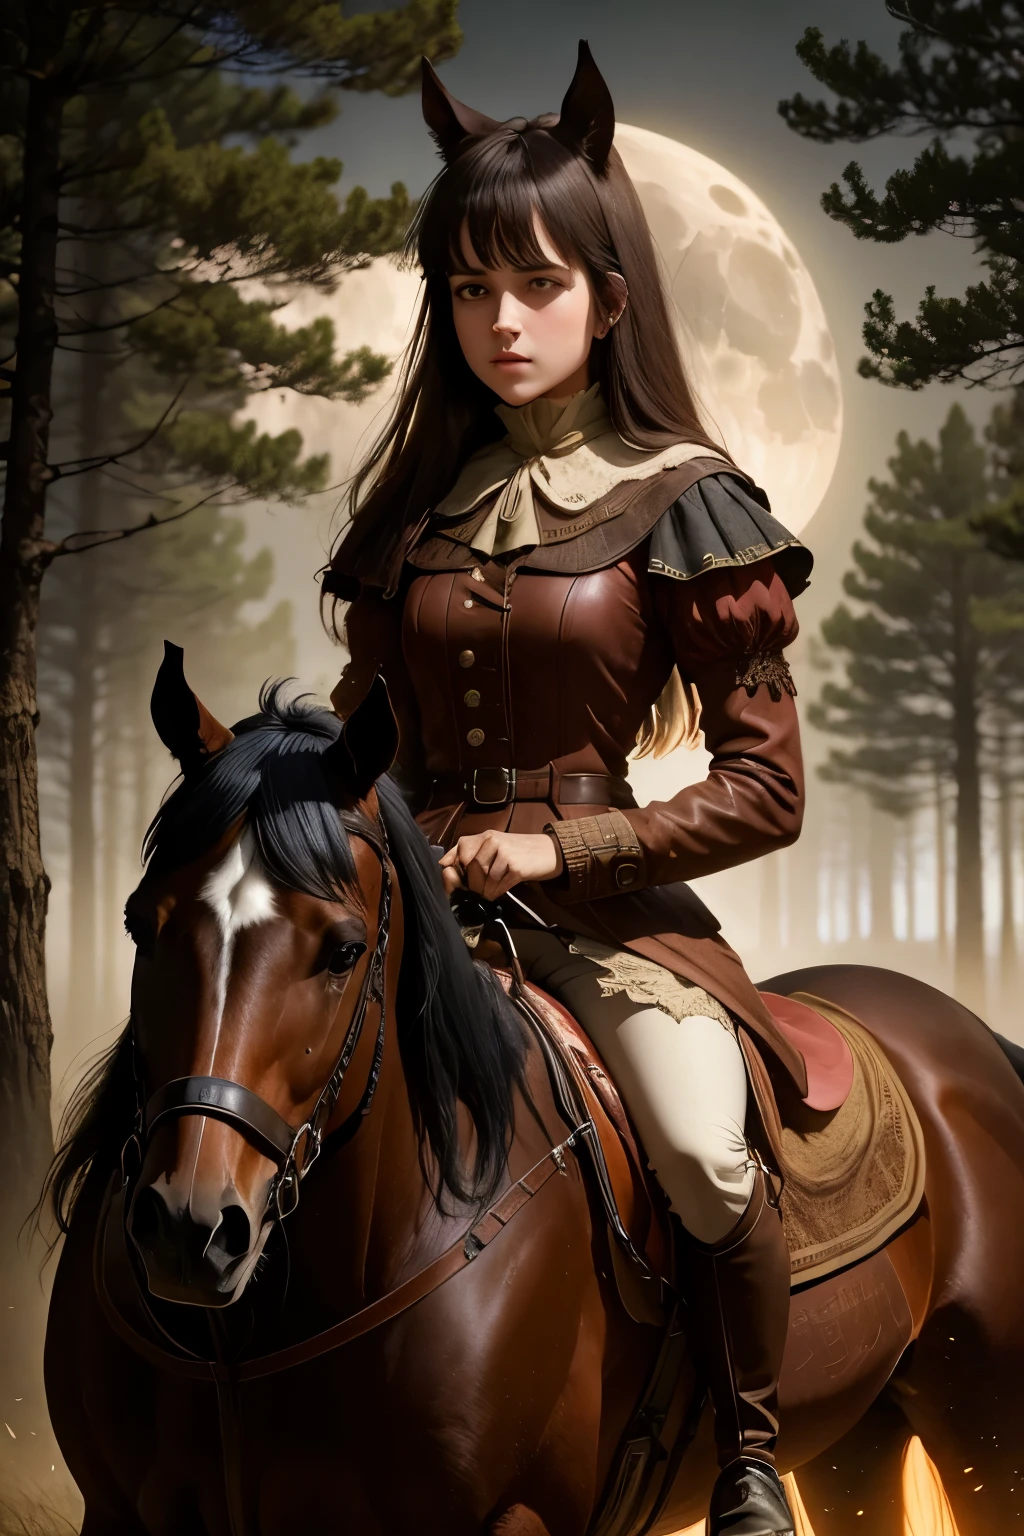 fille monte à cheval (best quaalluméy,haute résolution:1.2),Ultra-détaillé,réaliste,clair de lune,allumé ,brume dense,terriblement beau,arbres tordus,